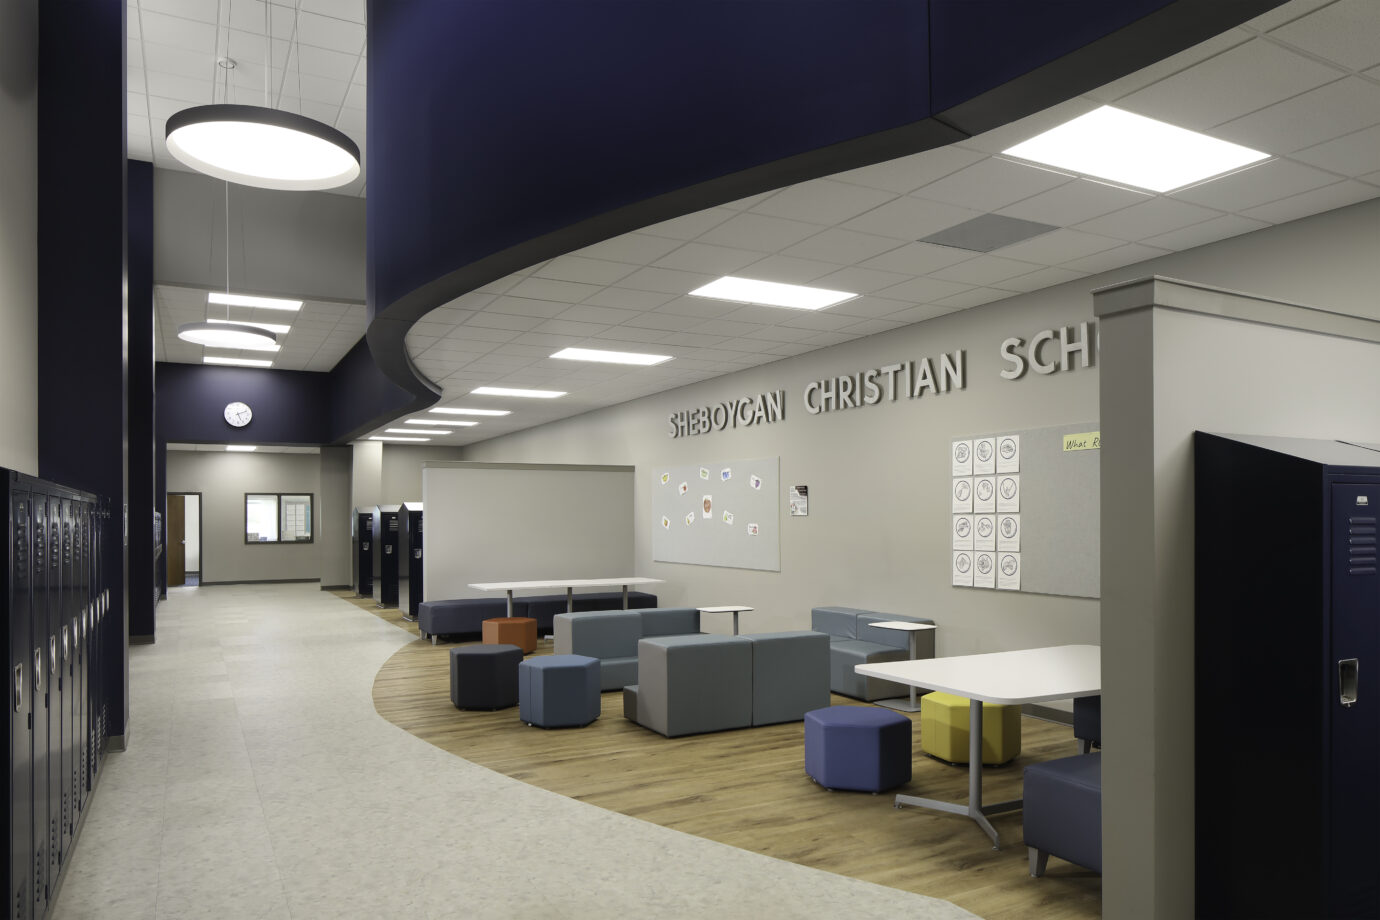 LVT in School Flex Space and Corridor